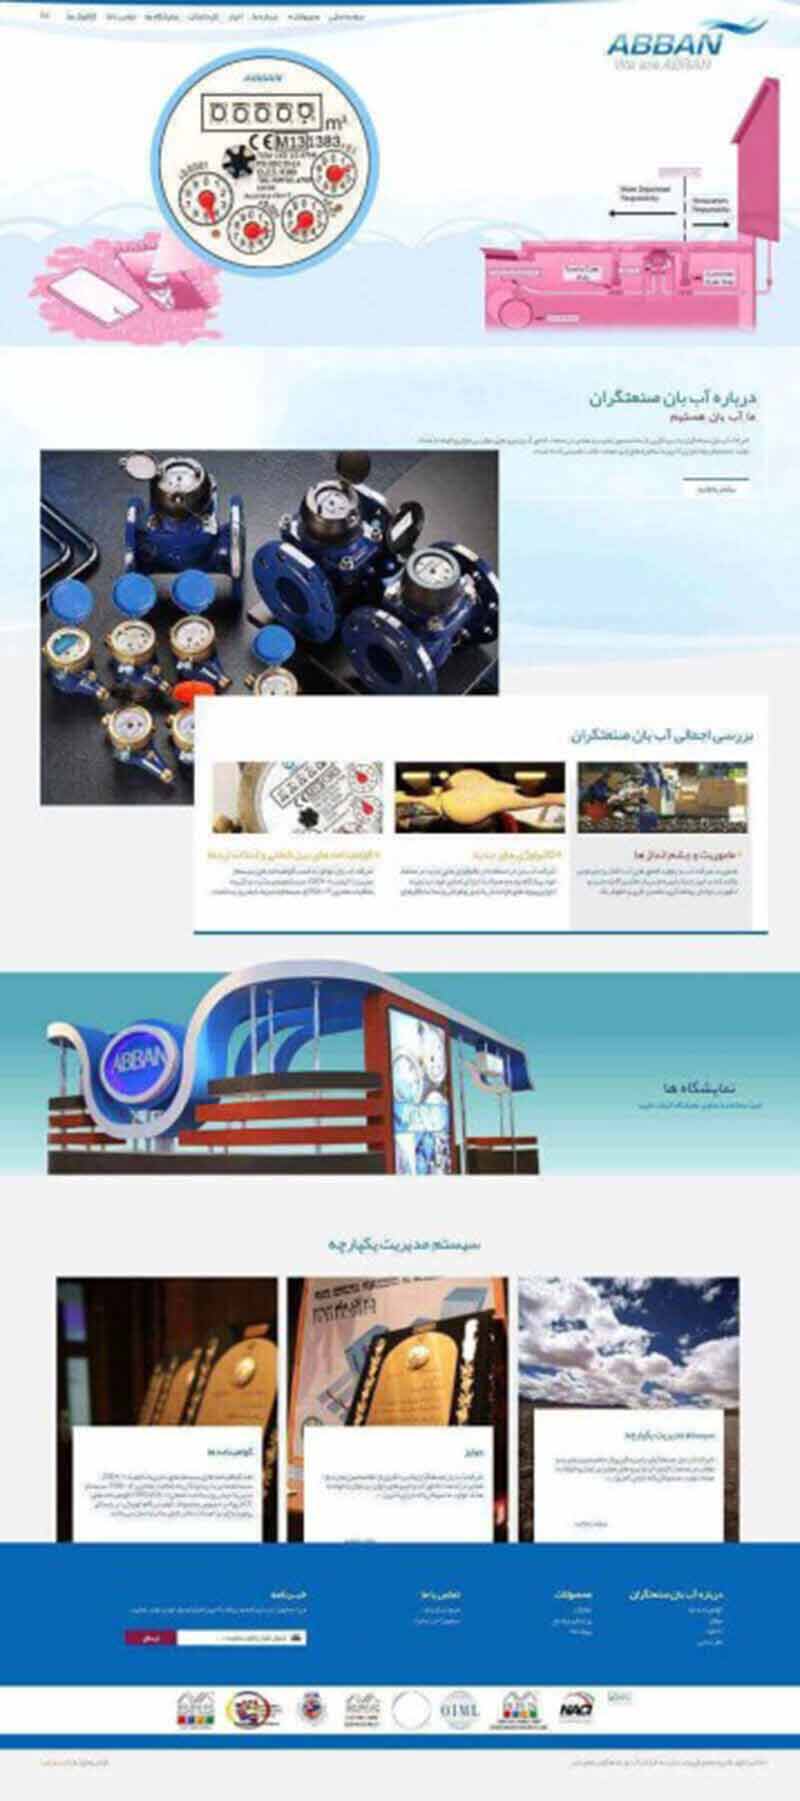 طراحی سایت شرکت آب بان صنعتگران